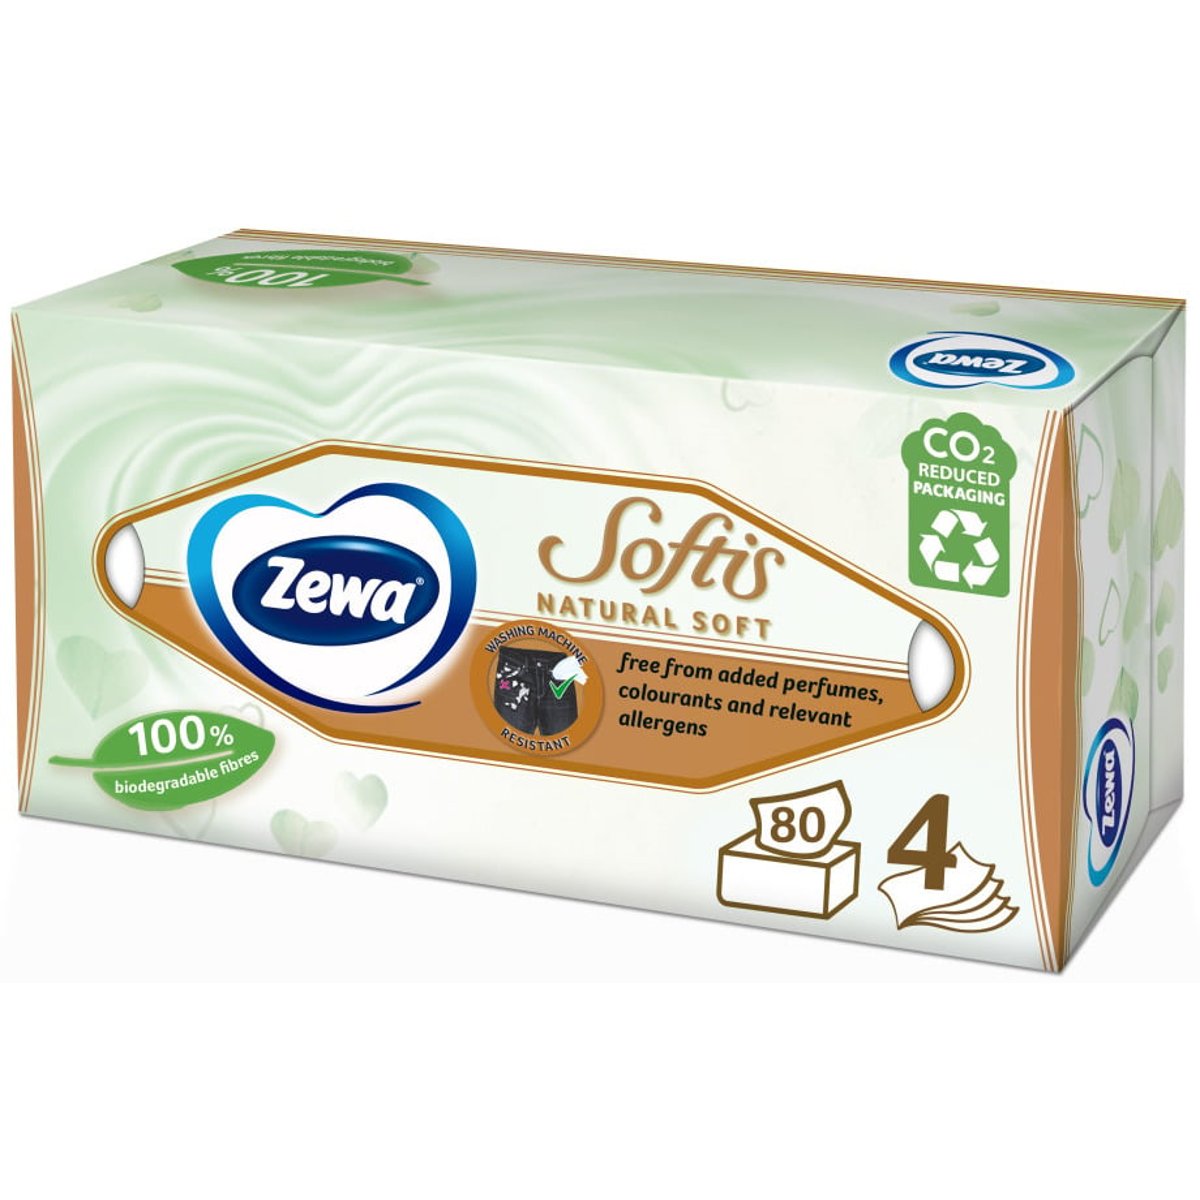 Zewa Softis natural soft box papírové kapesníky 4vrstvé box